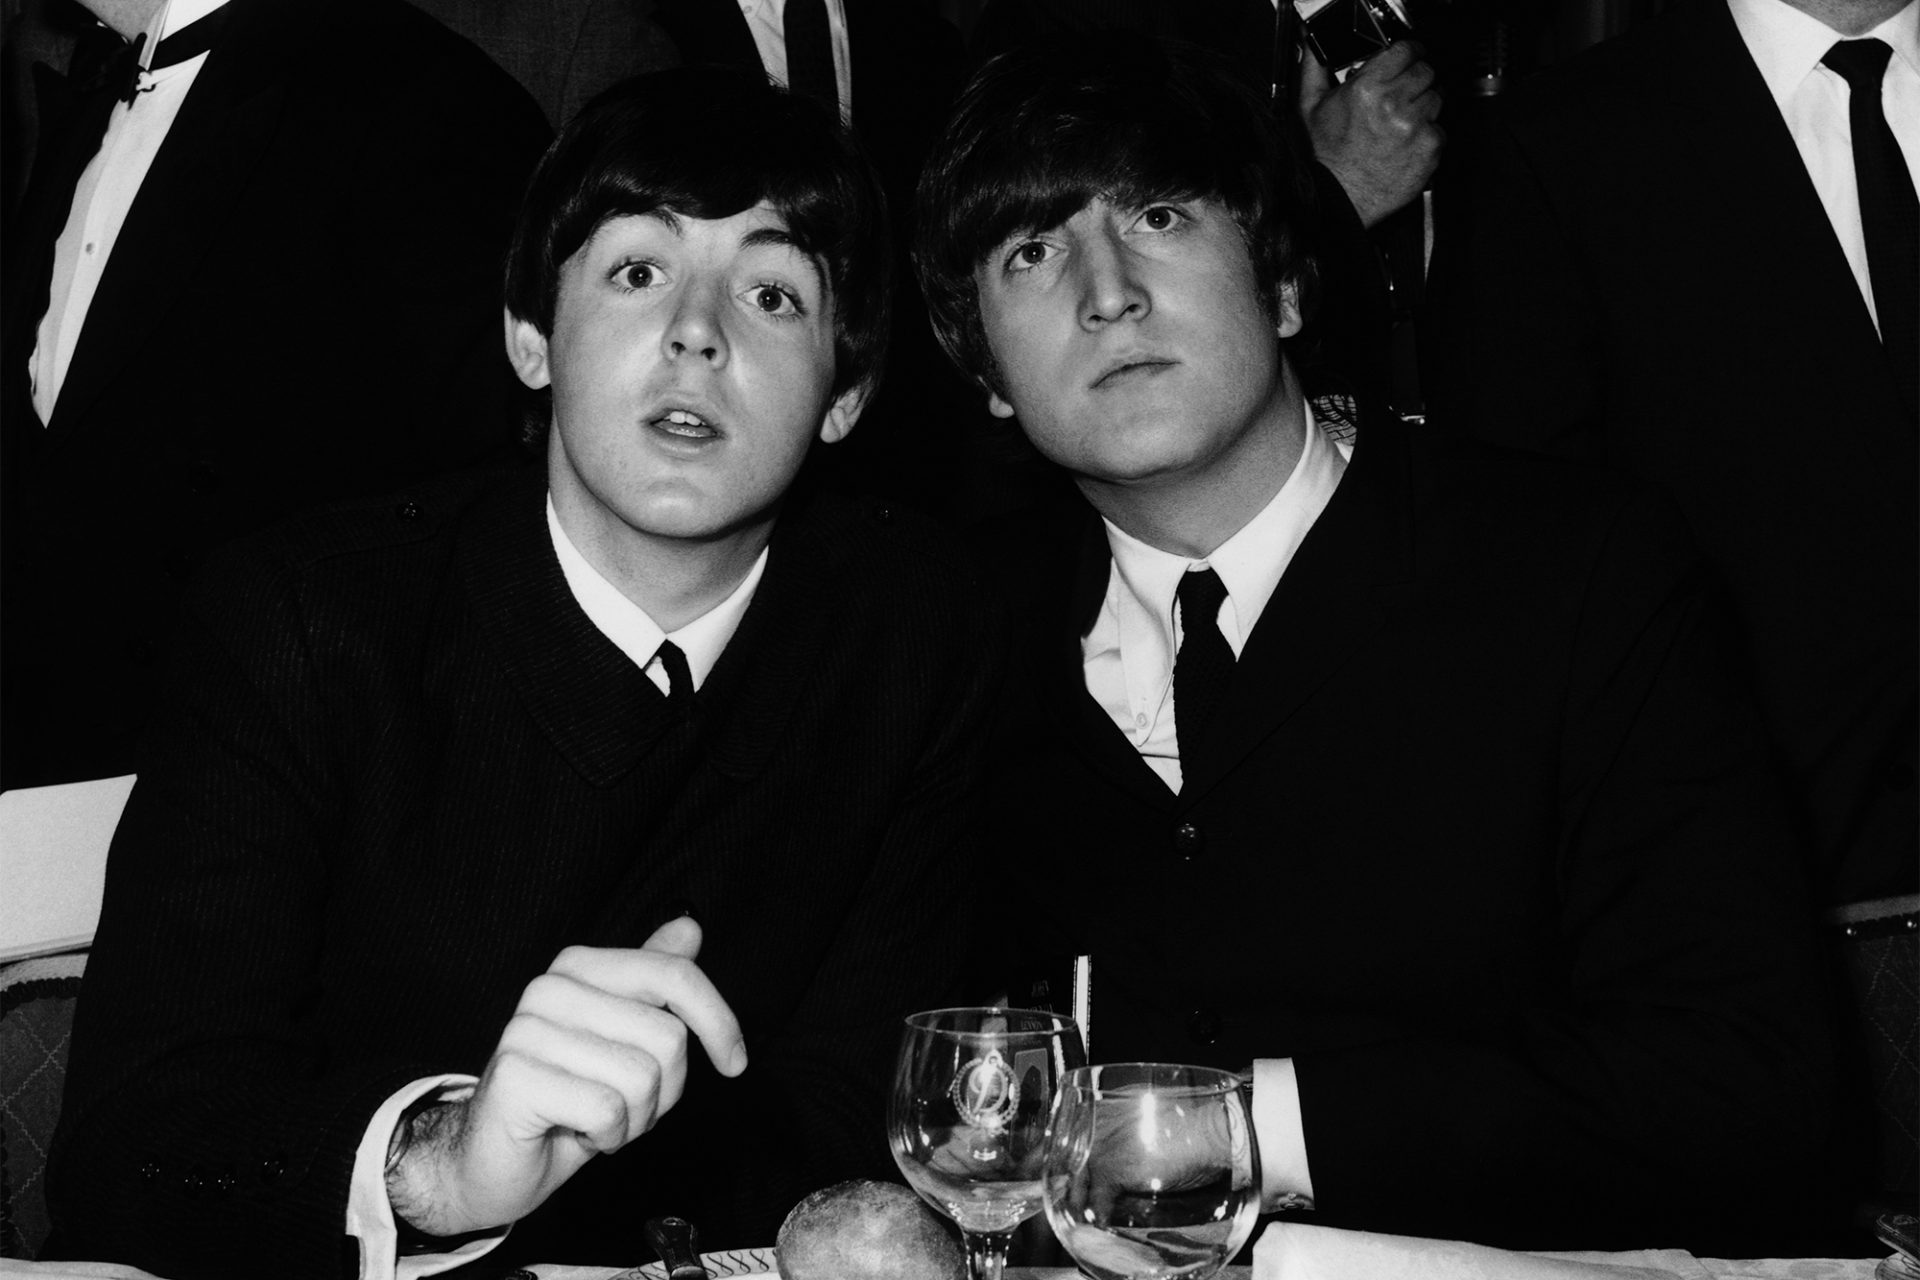 Paul McCartney claims John Lennon guilty for The Beatles’ break up